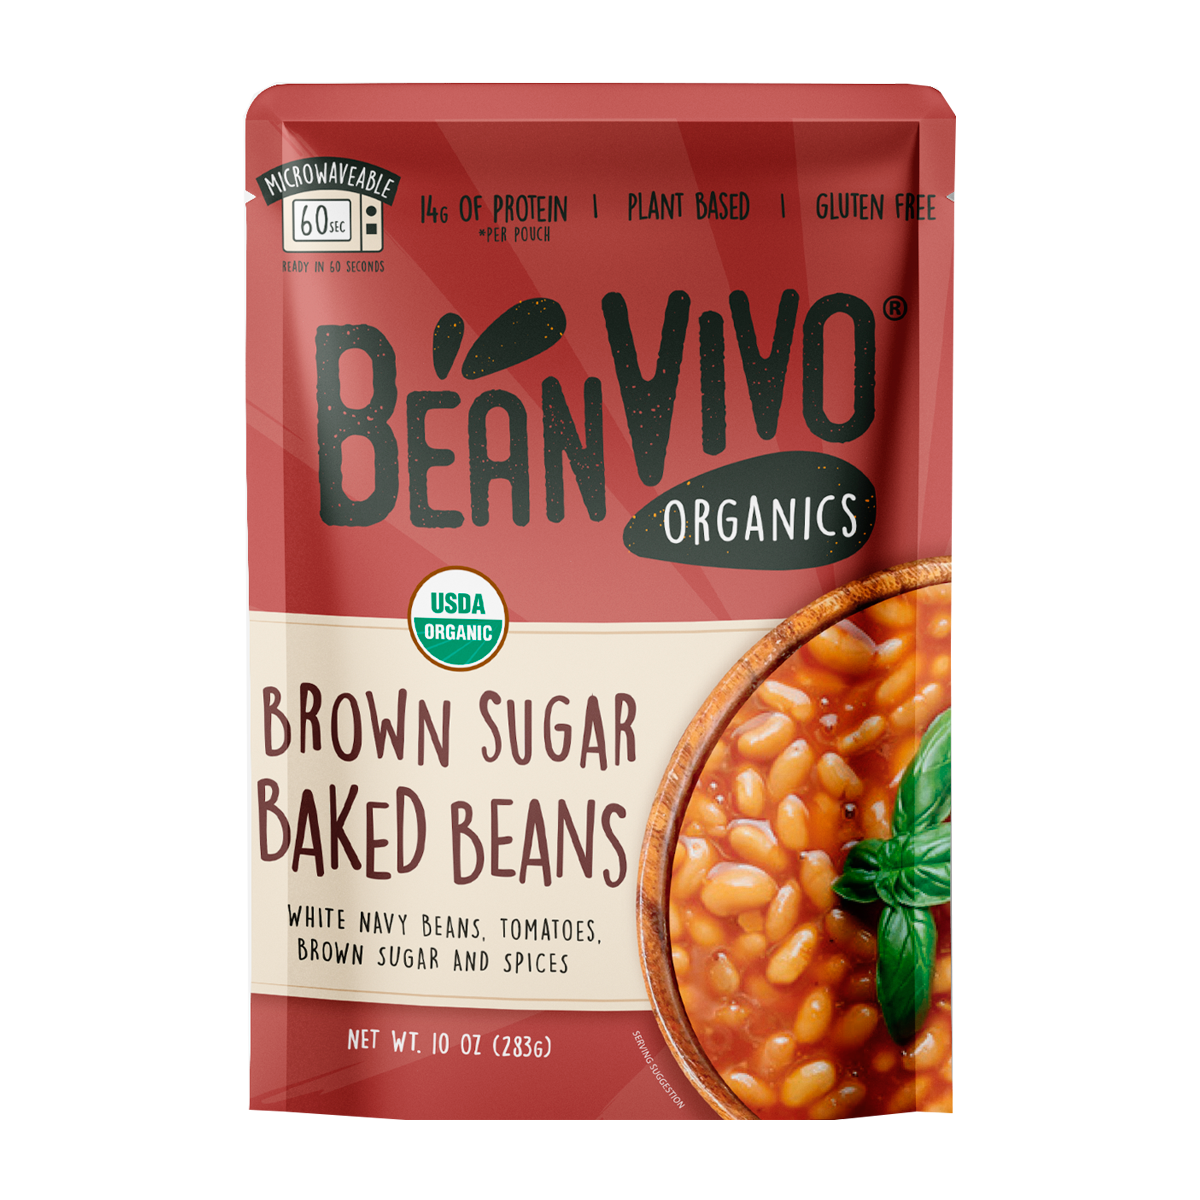 BeanVIVO Organic Brown Sugar Baked Beans 6 units per case 10.0 oz